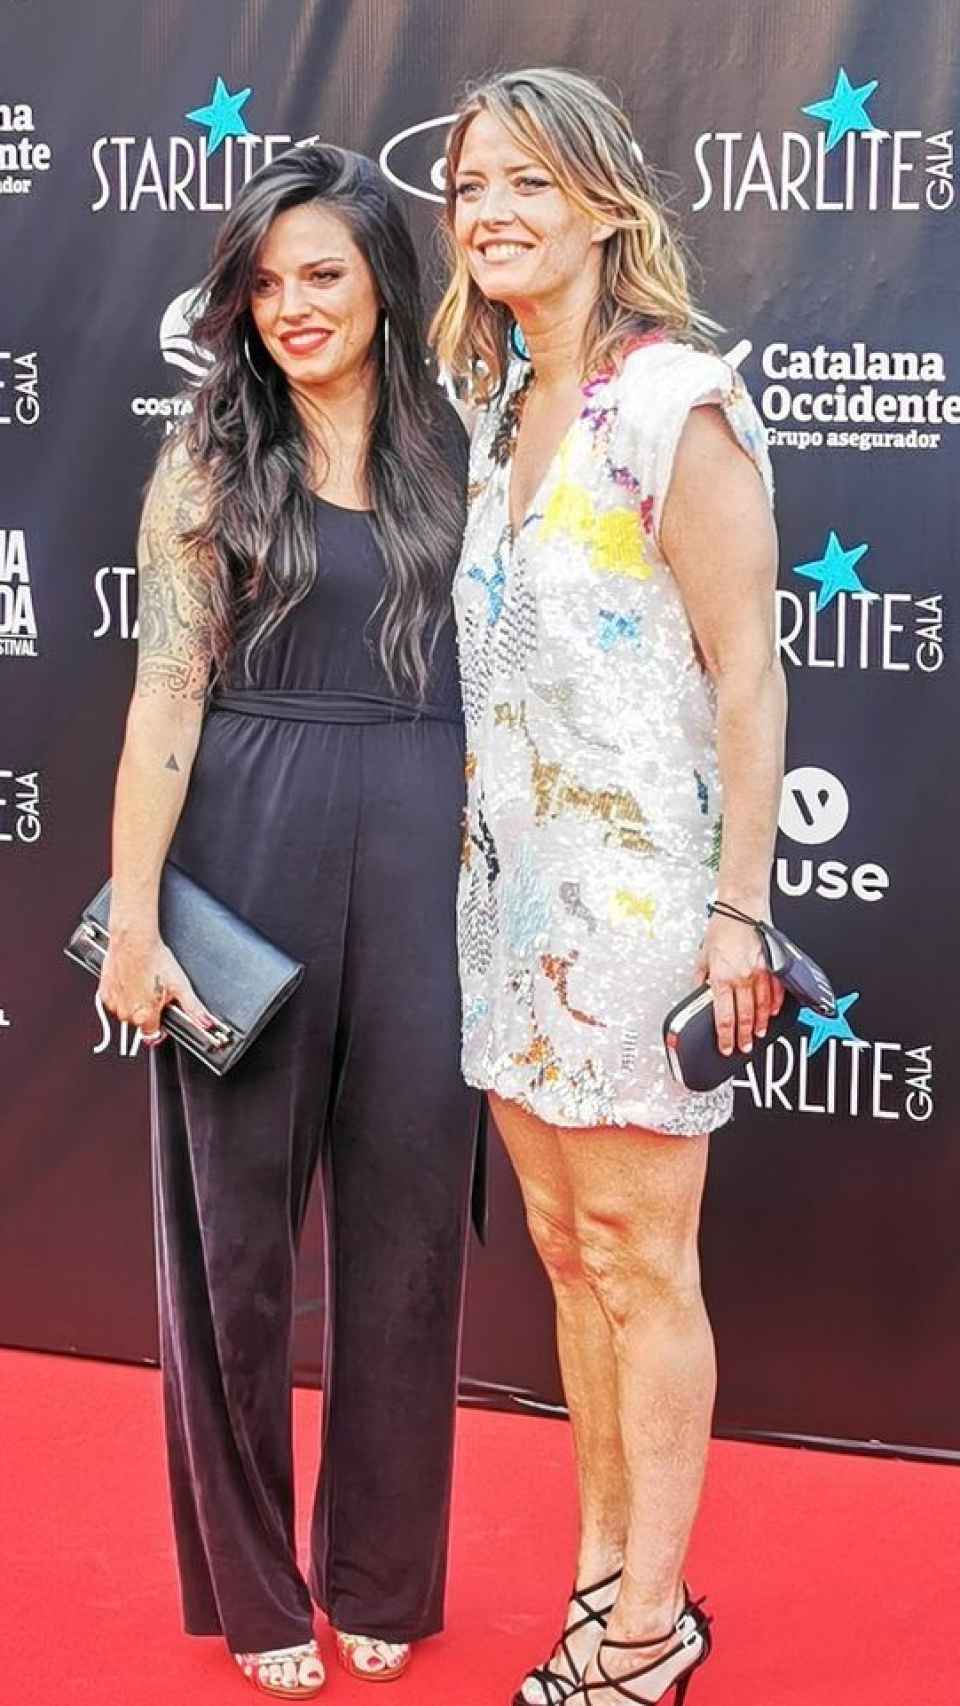 María Casado y Martina posando en la gala Starlite.